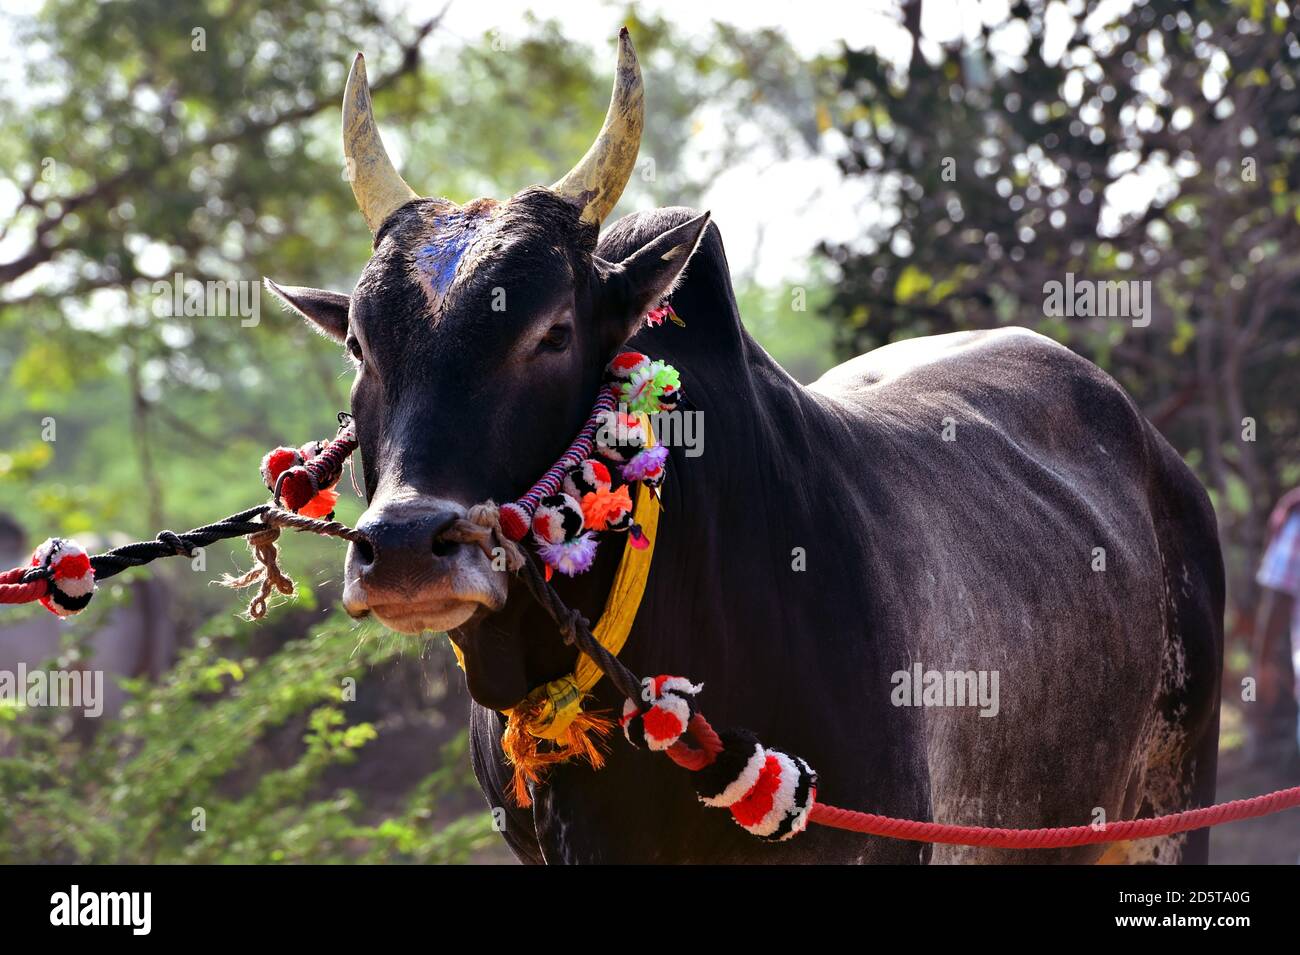 Porträt eines Jallikattu Bulls.Stierkämpfe wird in der gehalten Dörfer von Tamil Nadu als Teil der Ernte festival, südindisches Dorf Jallikattu Stier Stockfoto